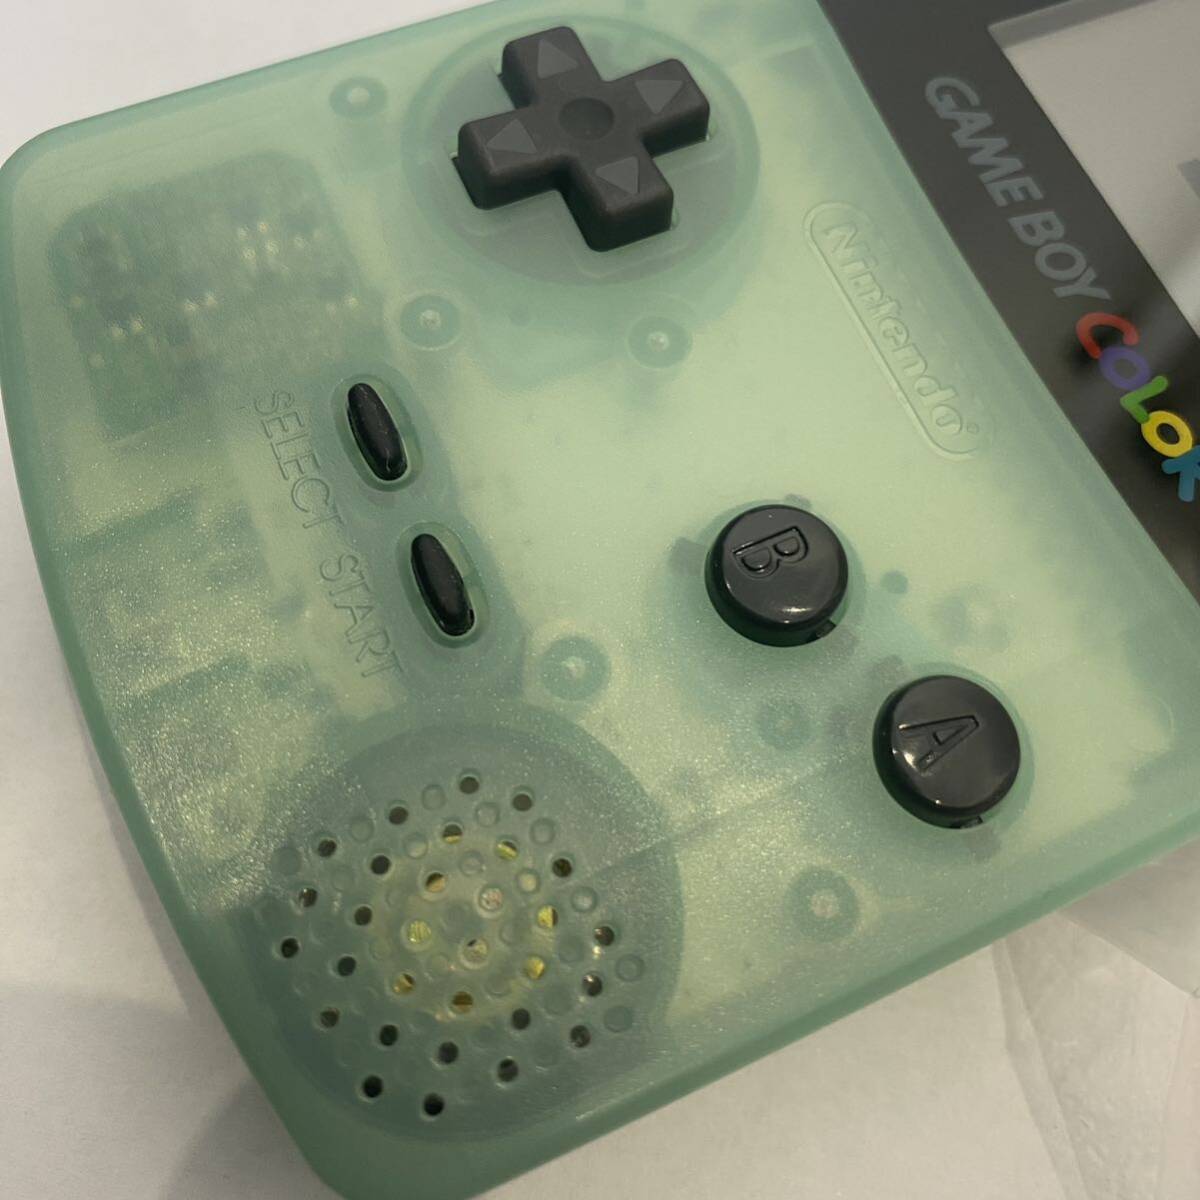  Game Boy цвет # почти новый товар не использовался ice blue * супер высшее редкий очень редкий игрушка The .sGBC nintendo Nintendo Nintendo 